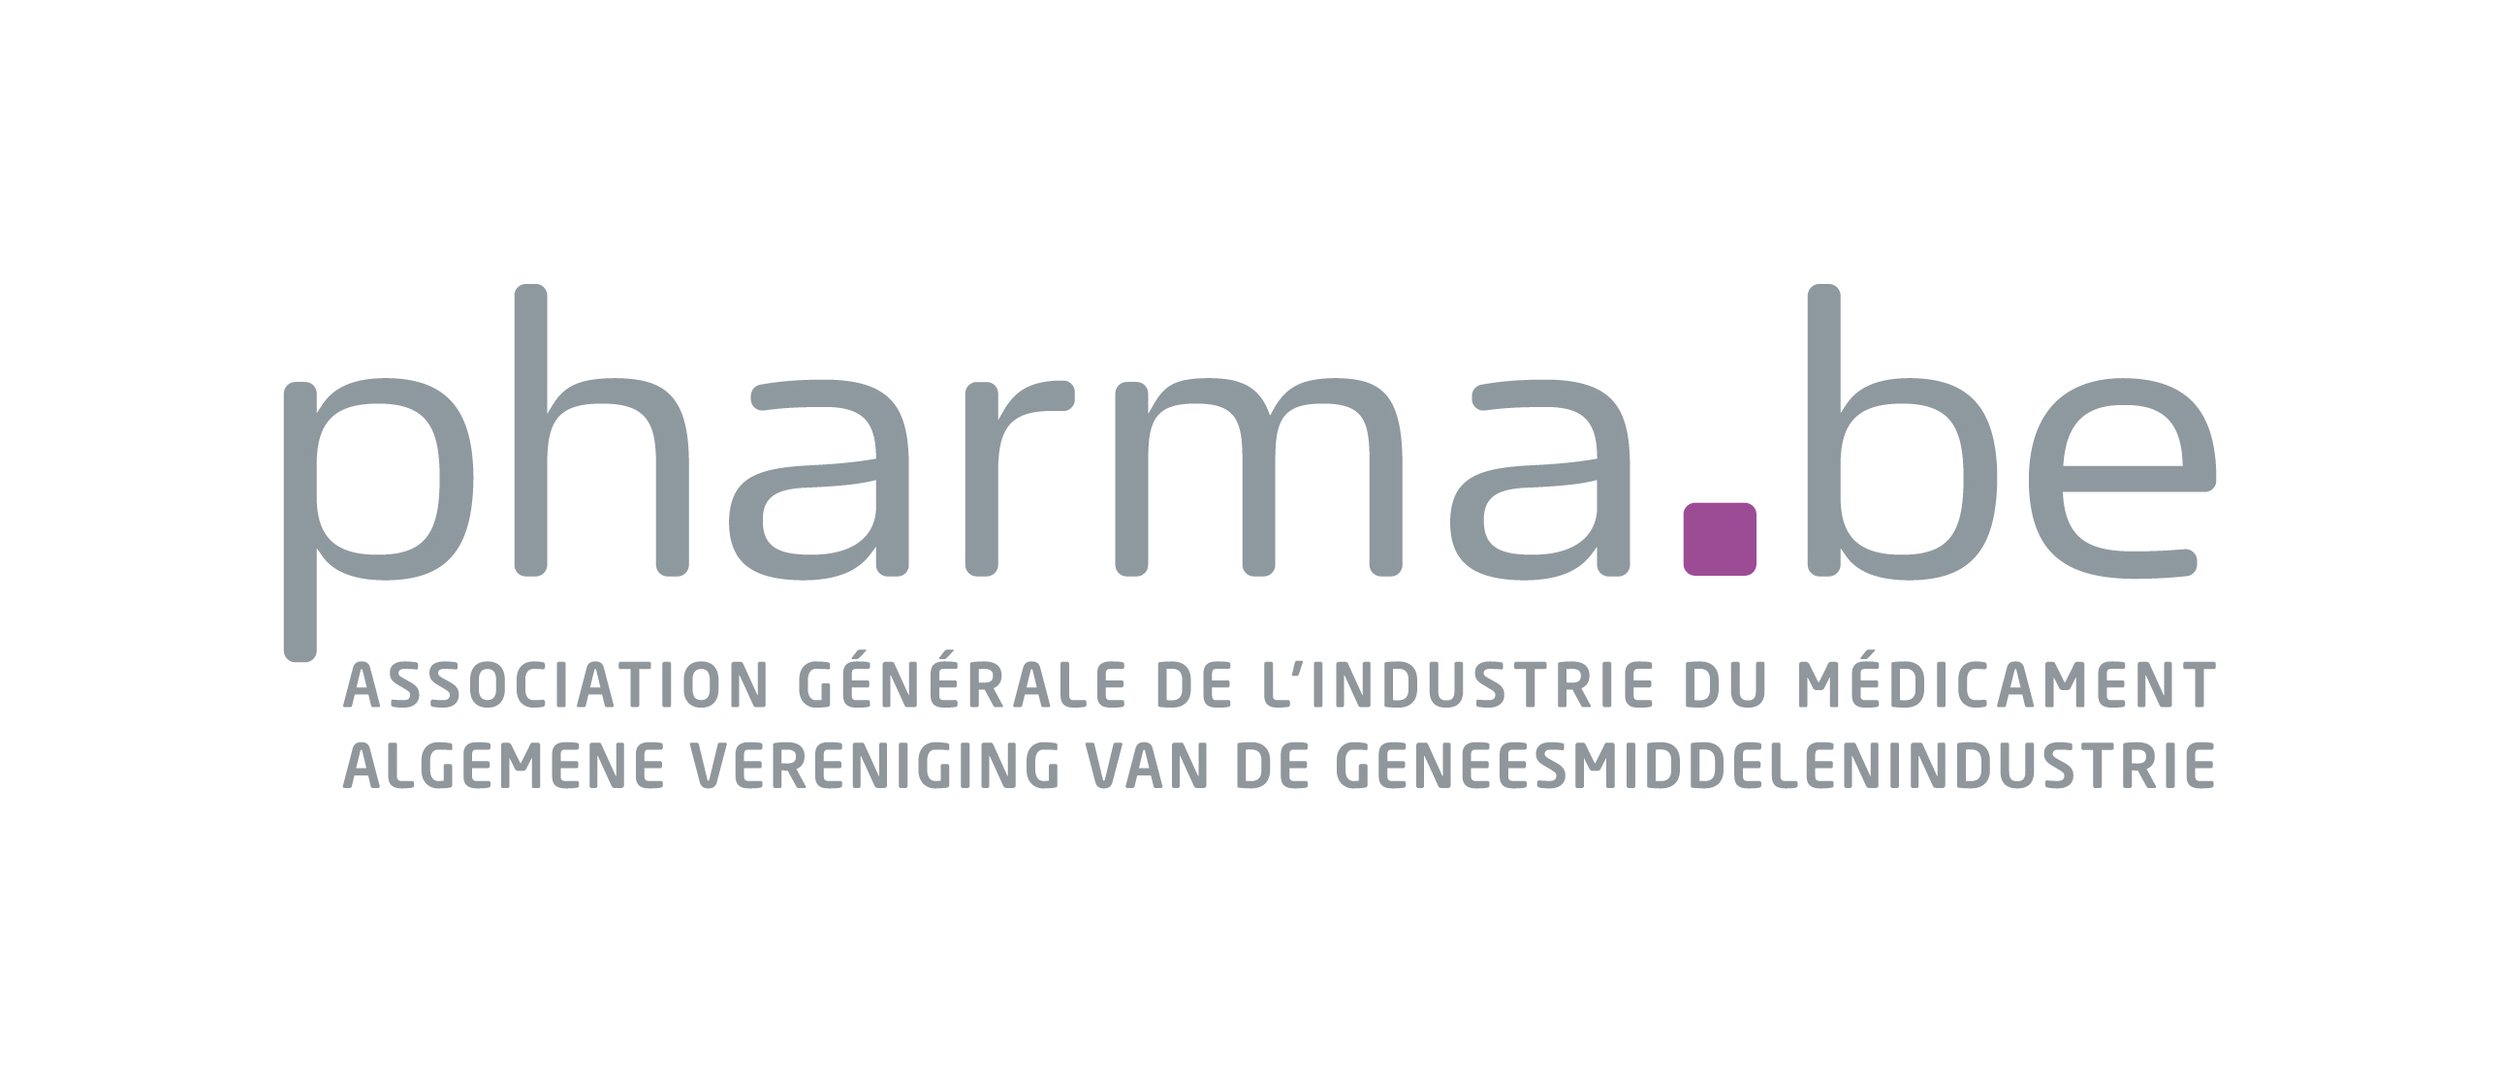 Pharma.be_Logo-Baseline_FR-NL_RGB_(+).jpg